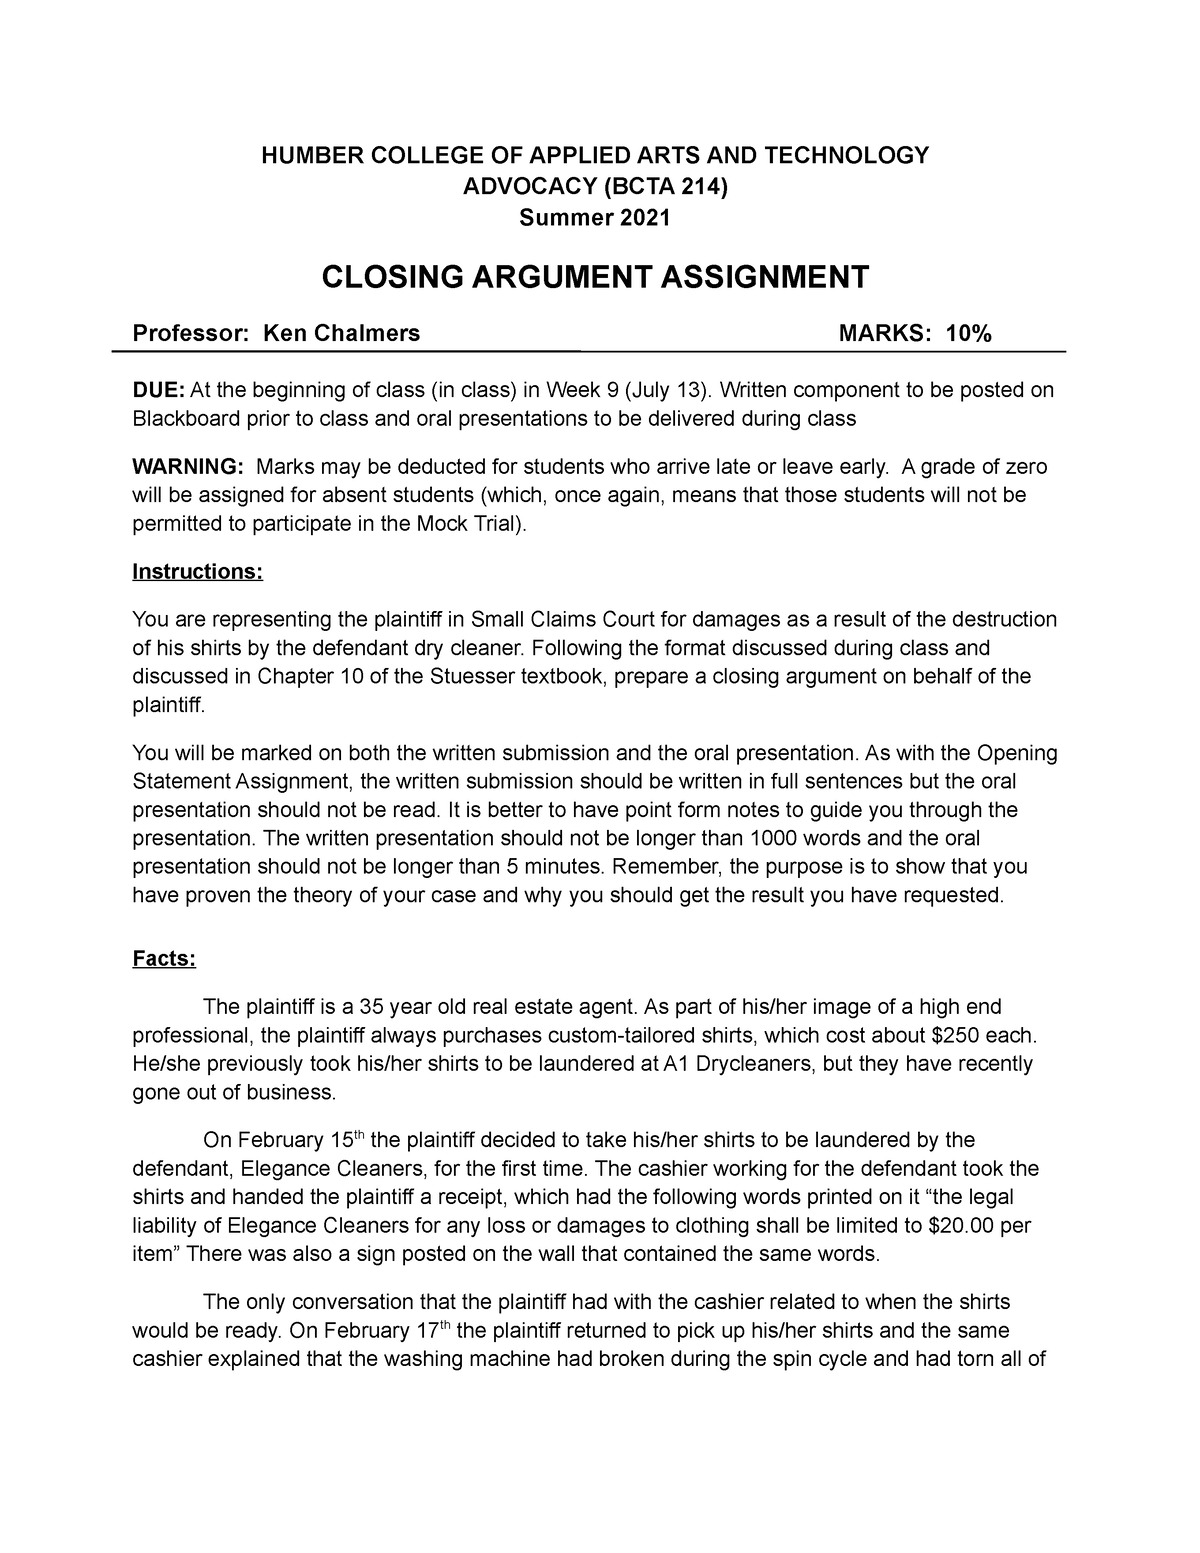 closing argument assignment